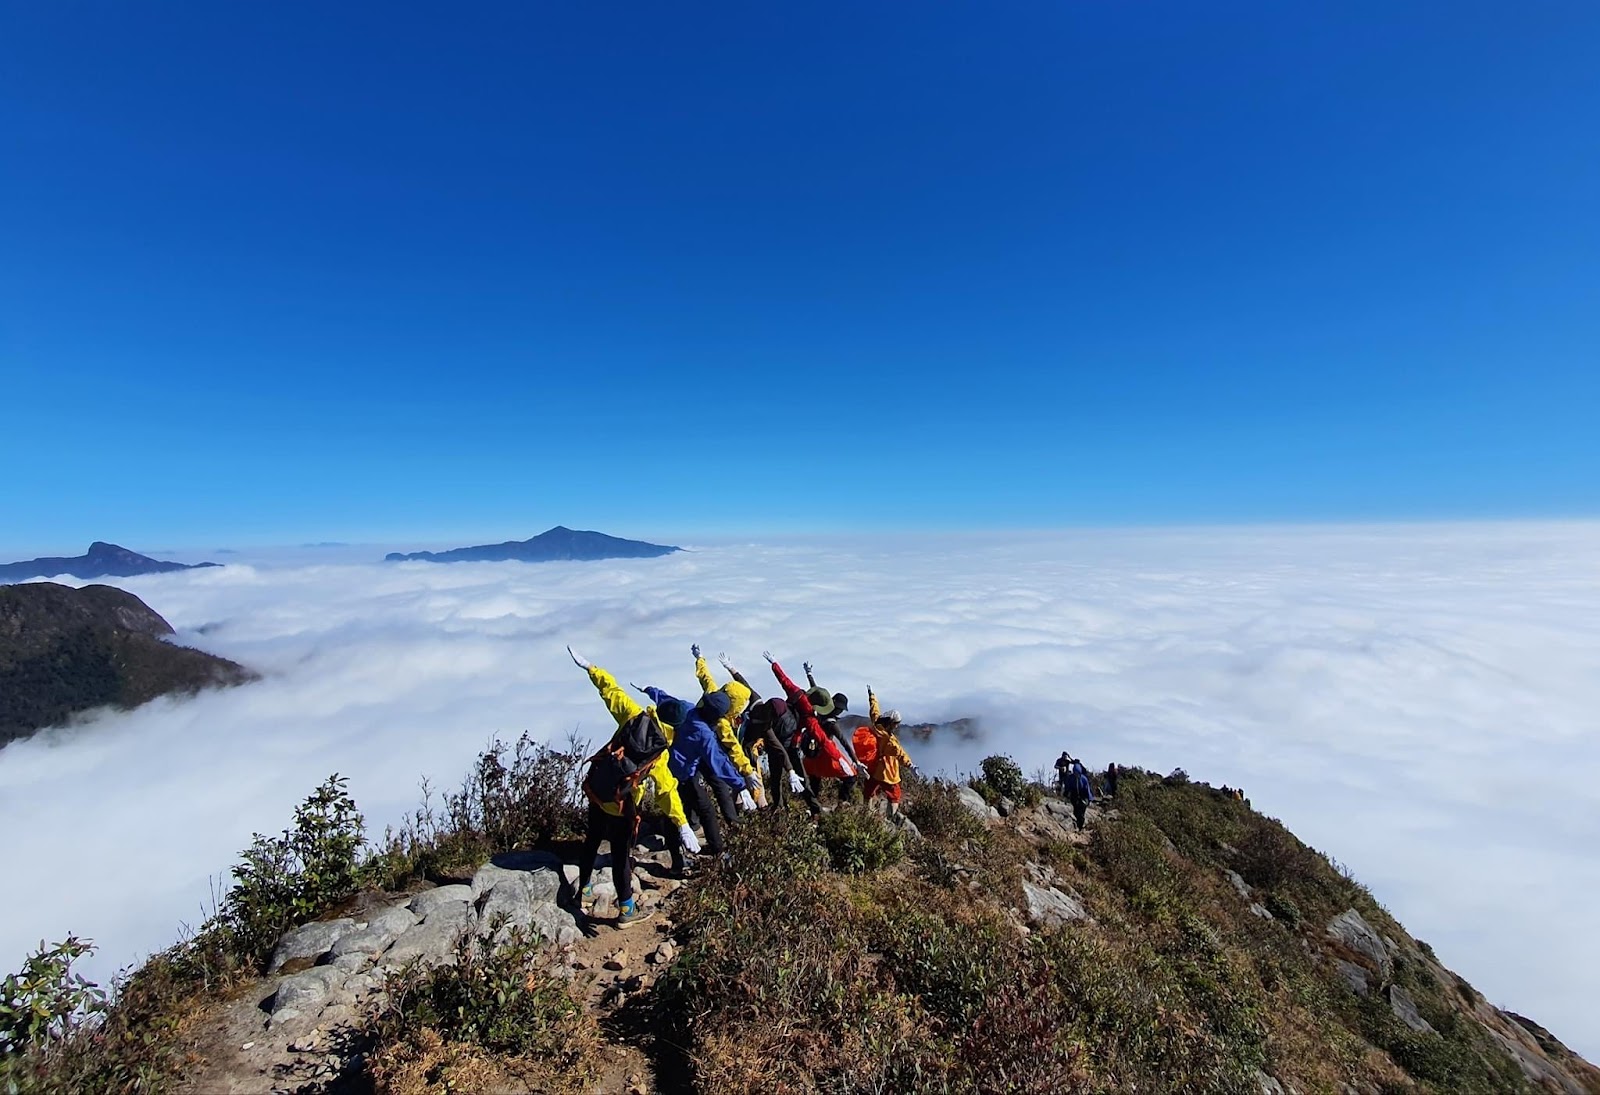 Phát hiện điểm leo núi có cái tên đặc biệt cách Hà Nội hơn 400km, du khách nhận xét “không phải ai cũng đi được” - Ảnh 7.